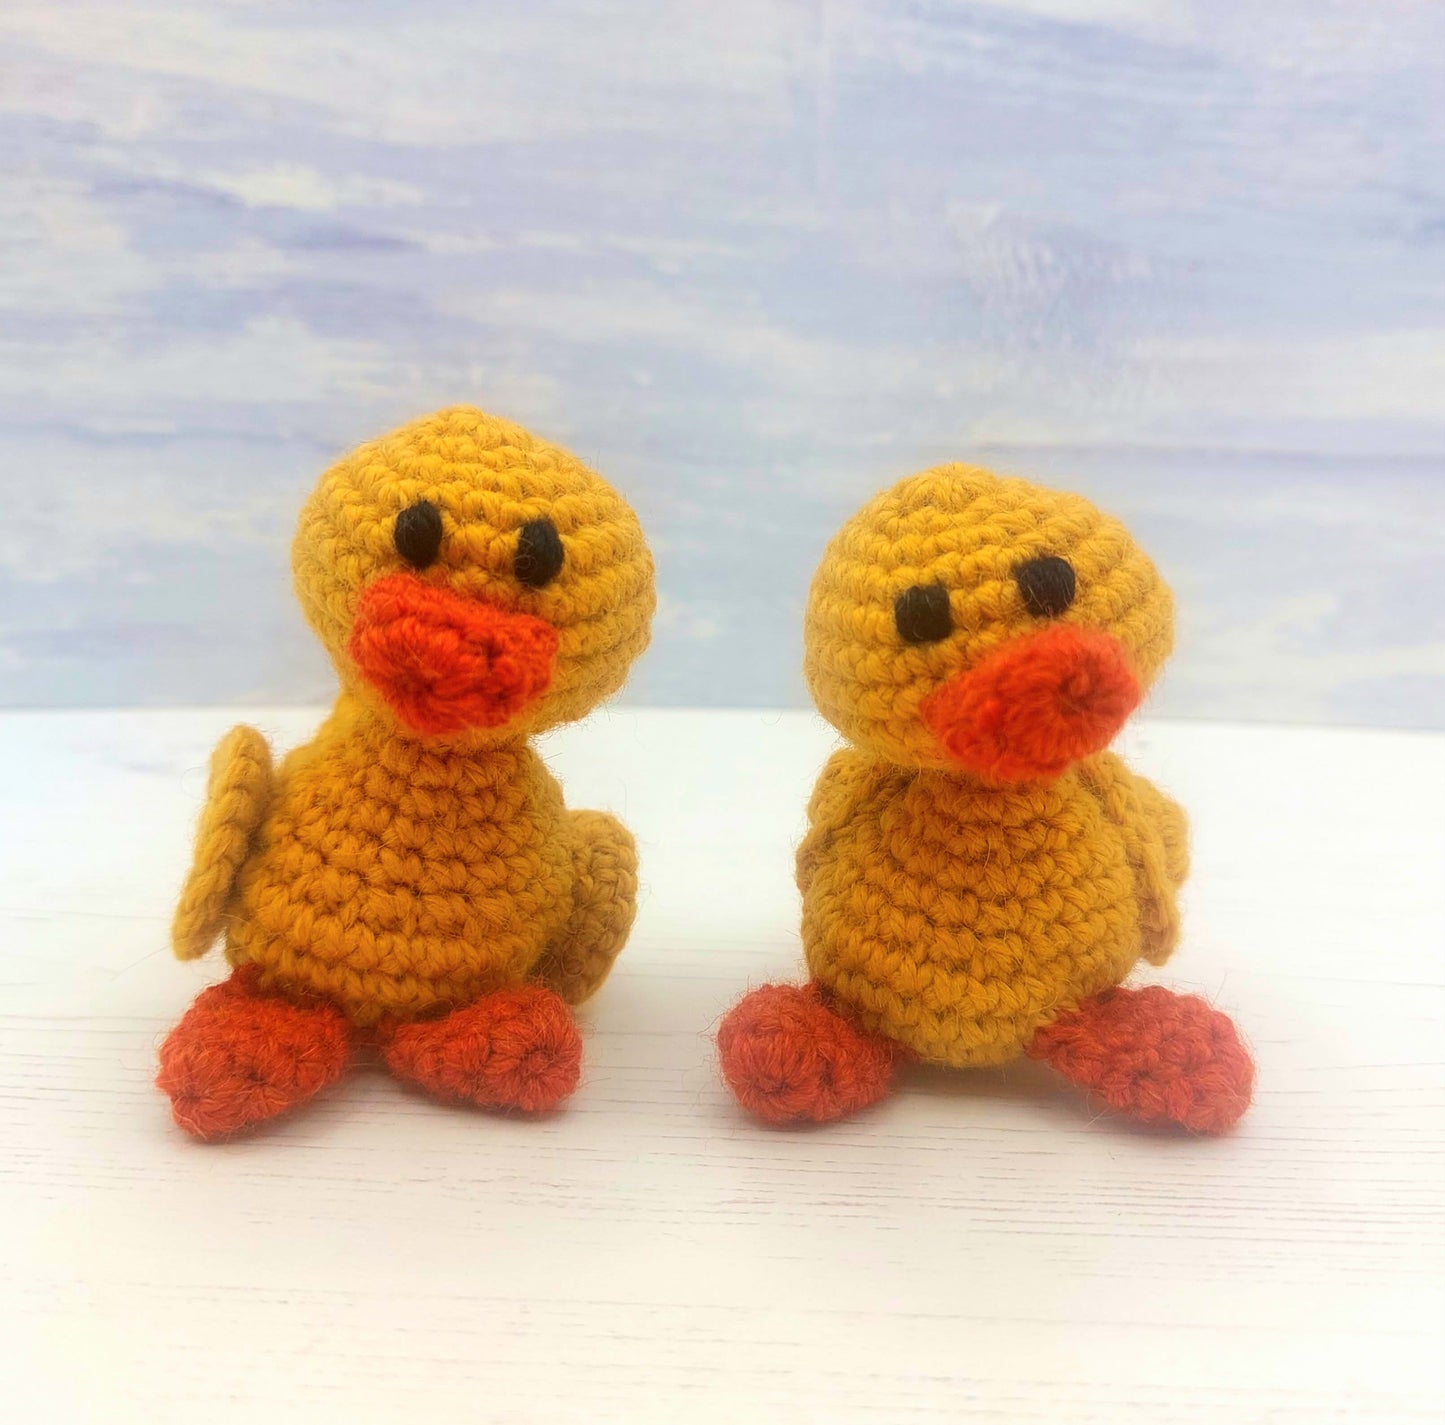 Daisy Duck & Family Crochet Kit